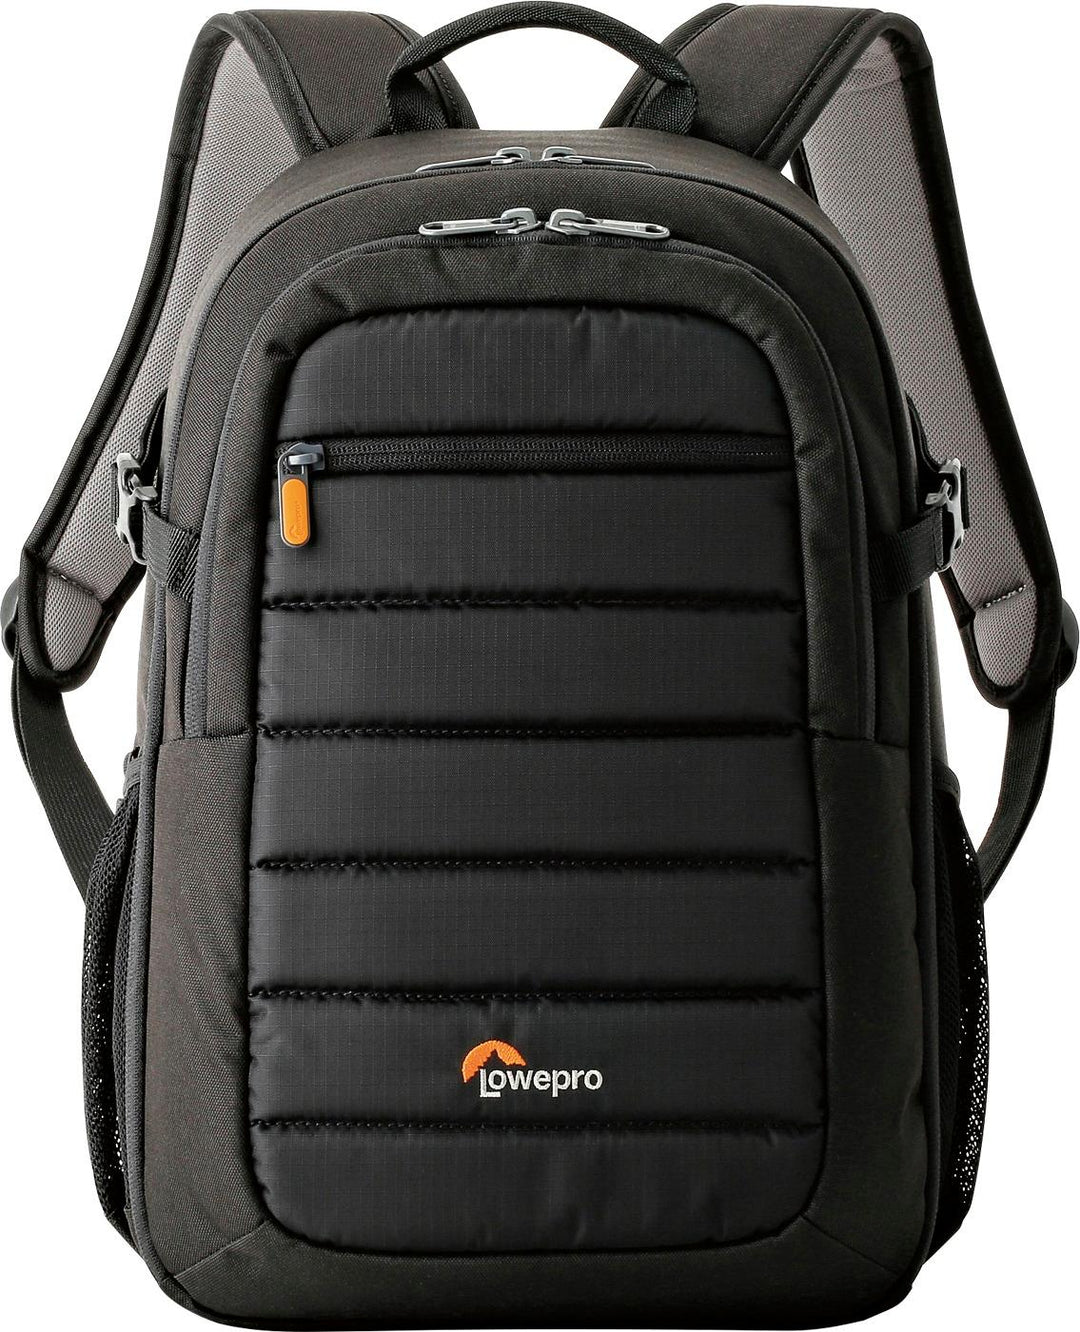 Lowepro - Tahoe BP 150 Camera Backpack - Black_1